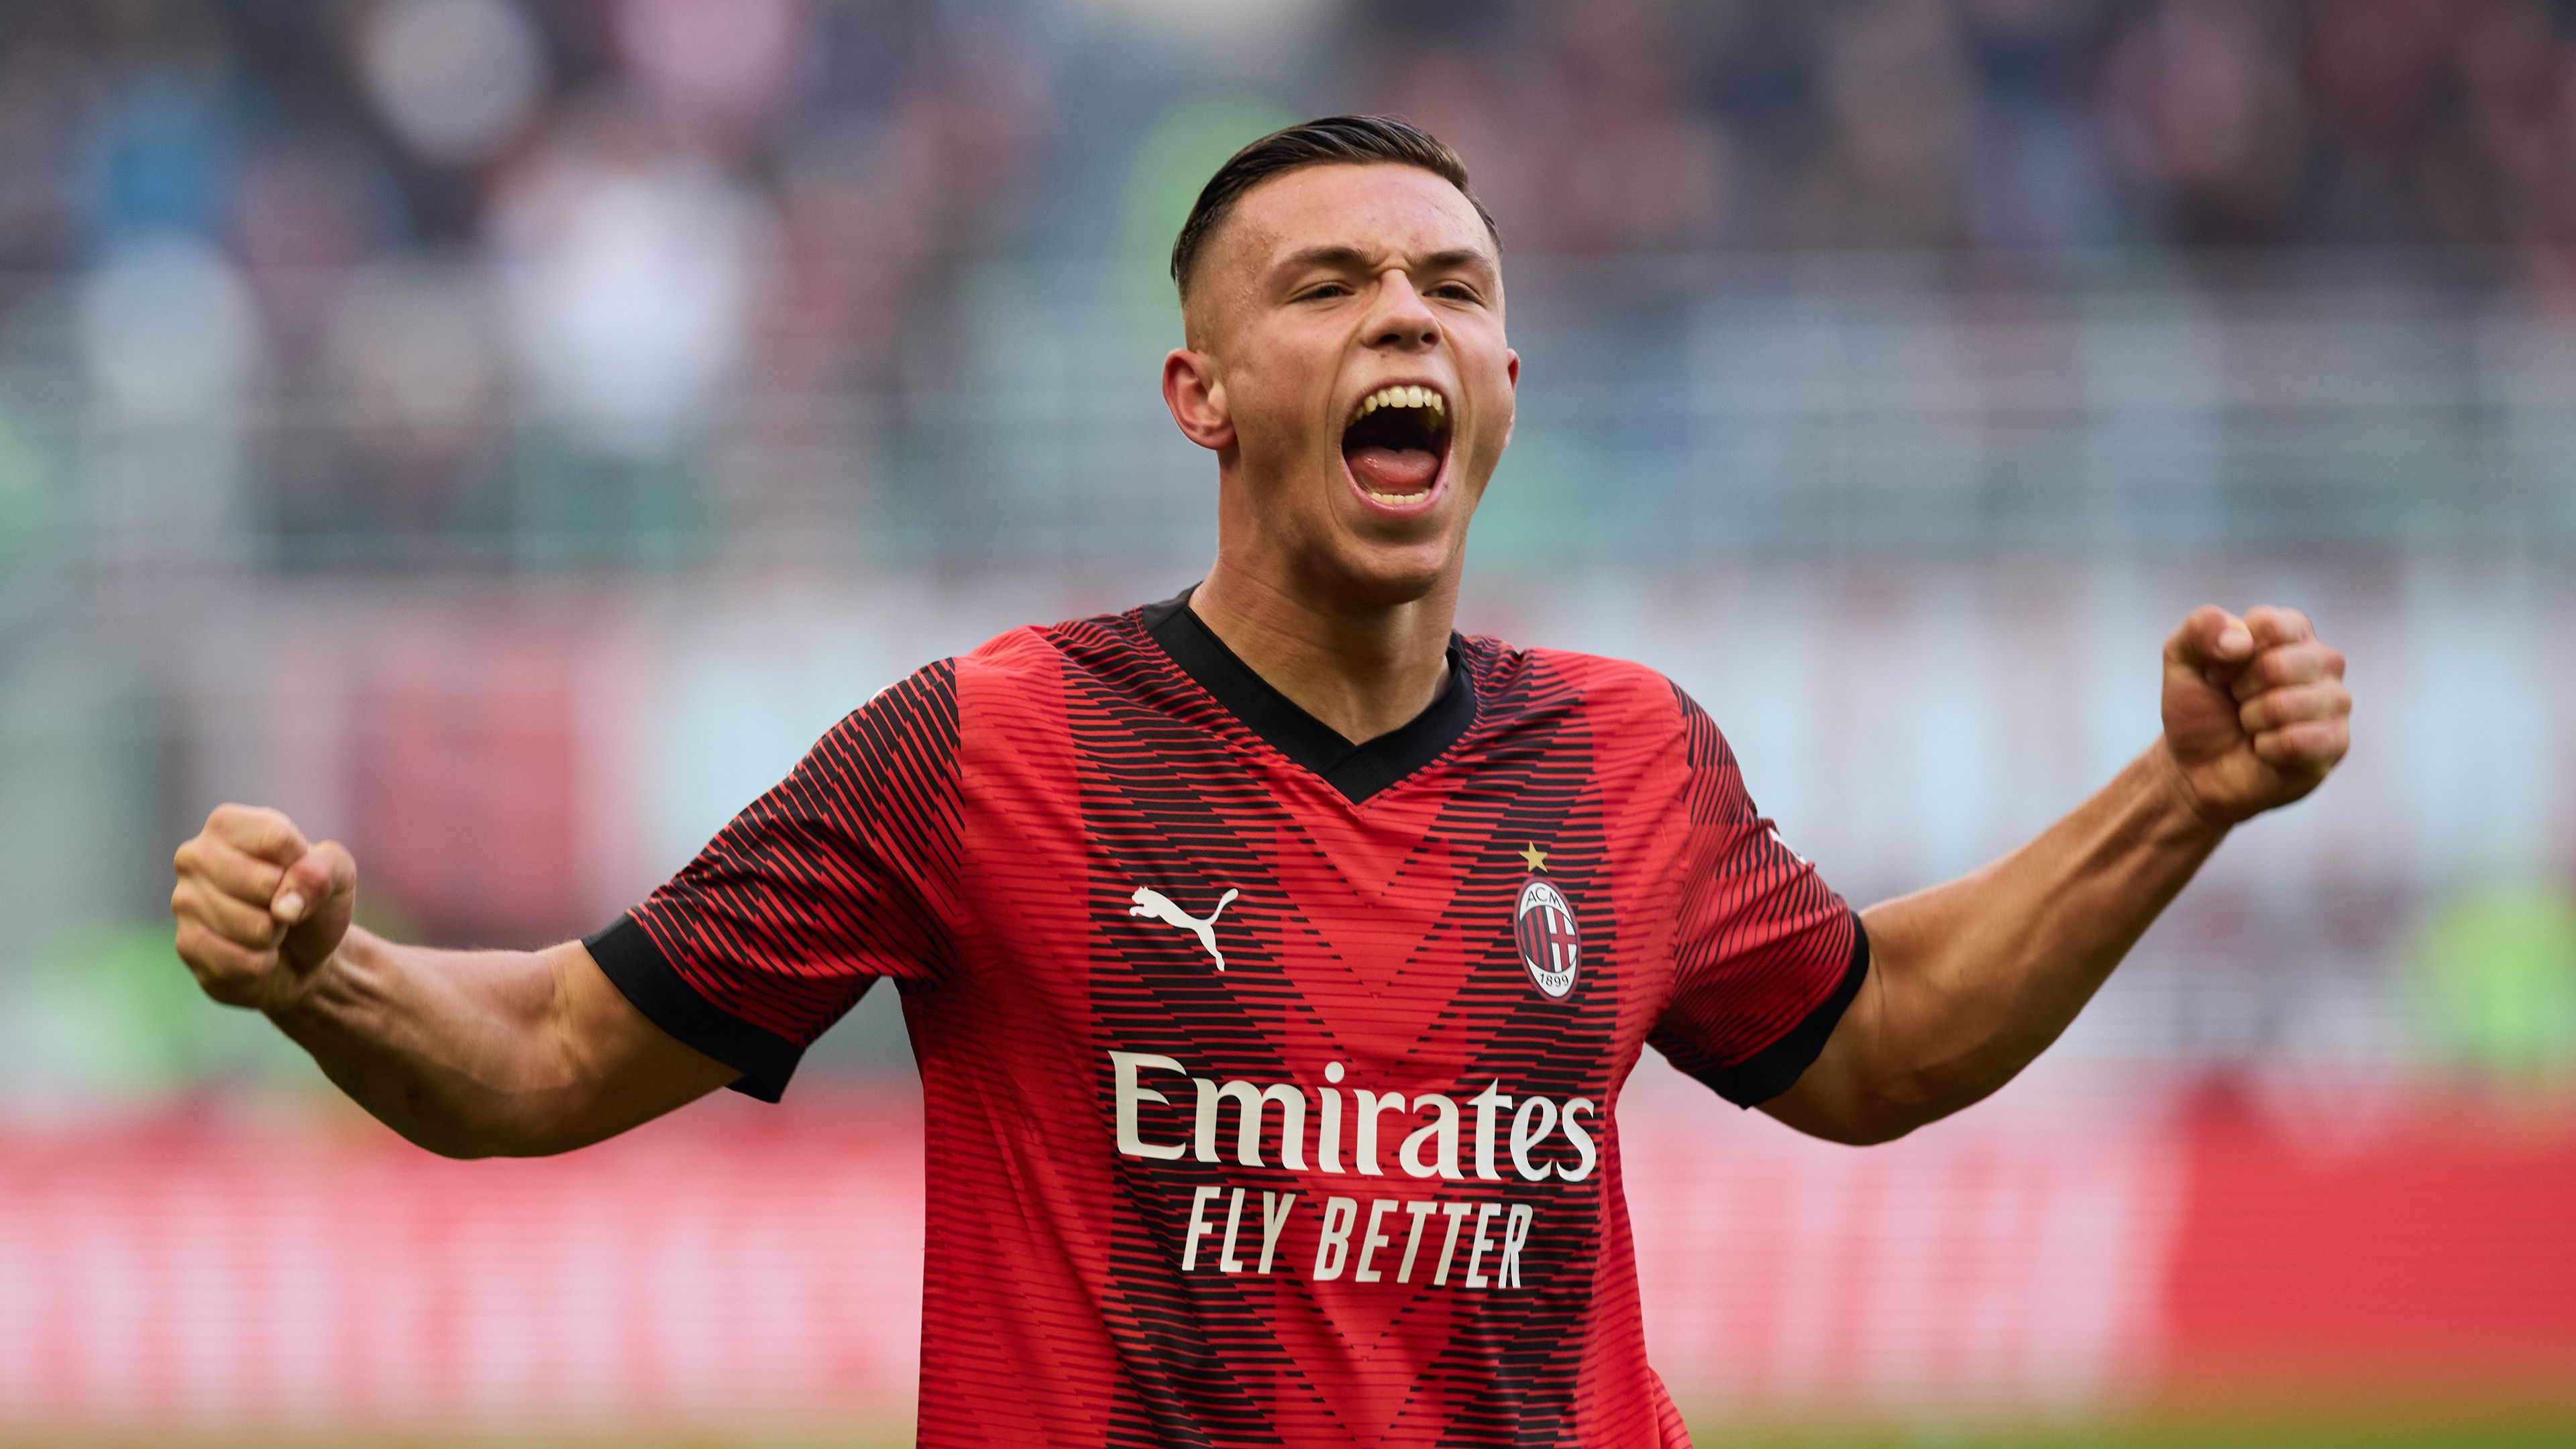 A 18 éves debütáló góllal járult hozzá a Milan győzelméhez